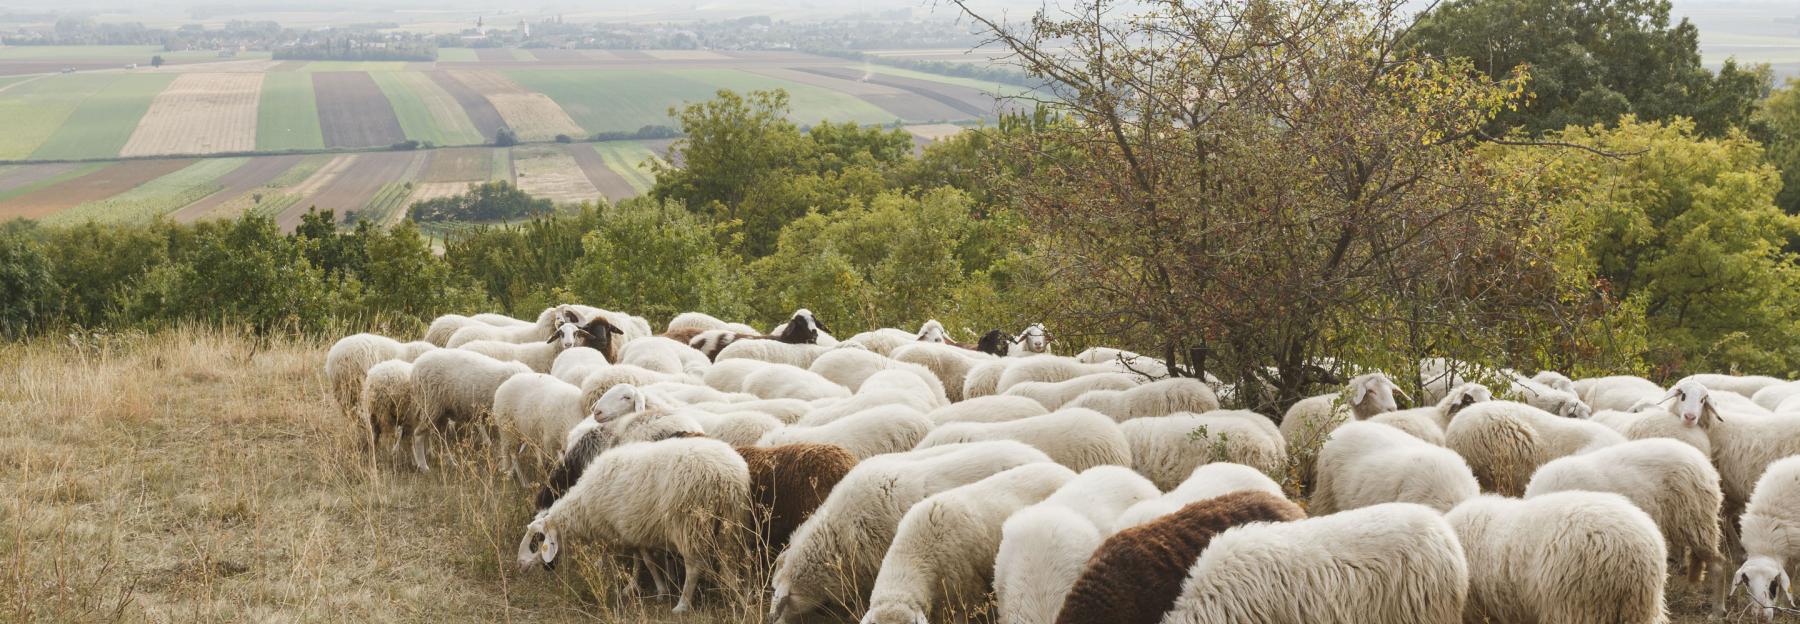 eine Herde Schafe beim grasen